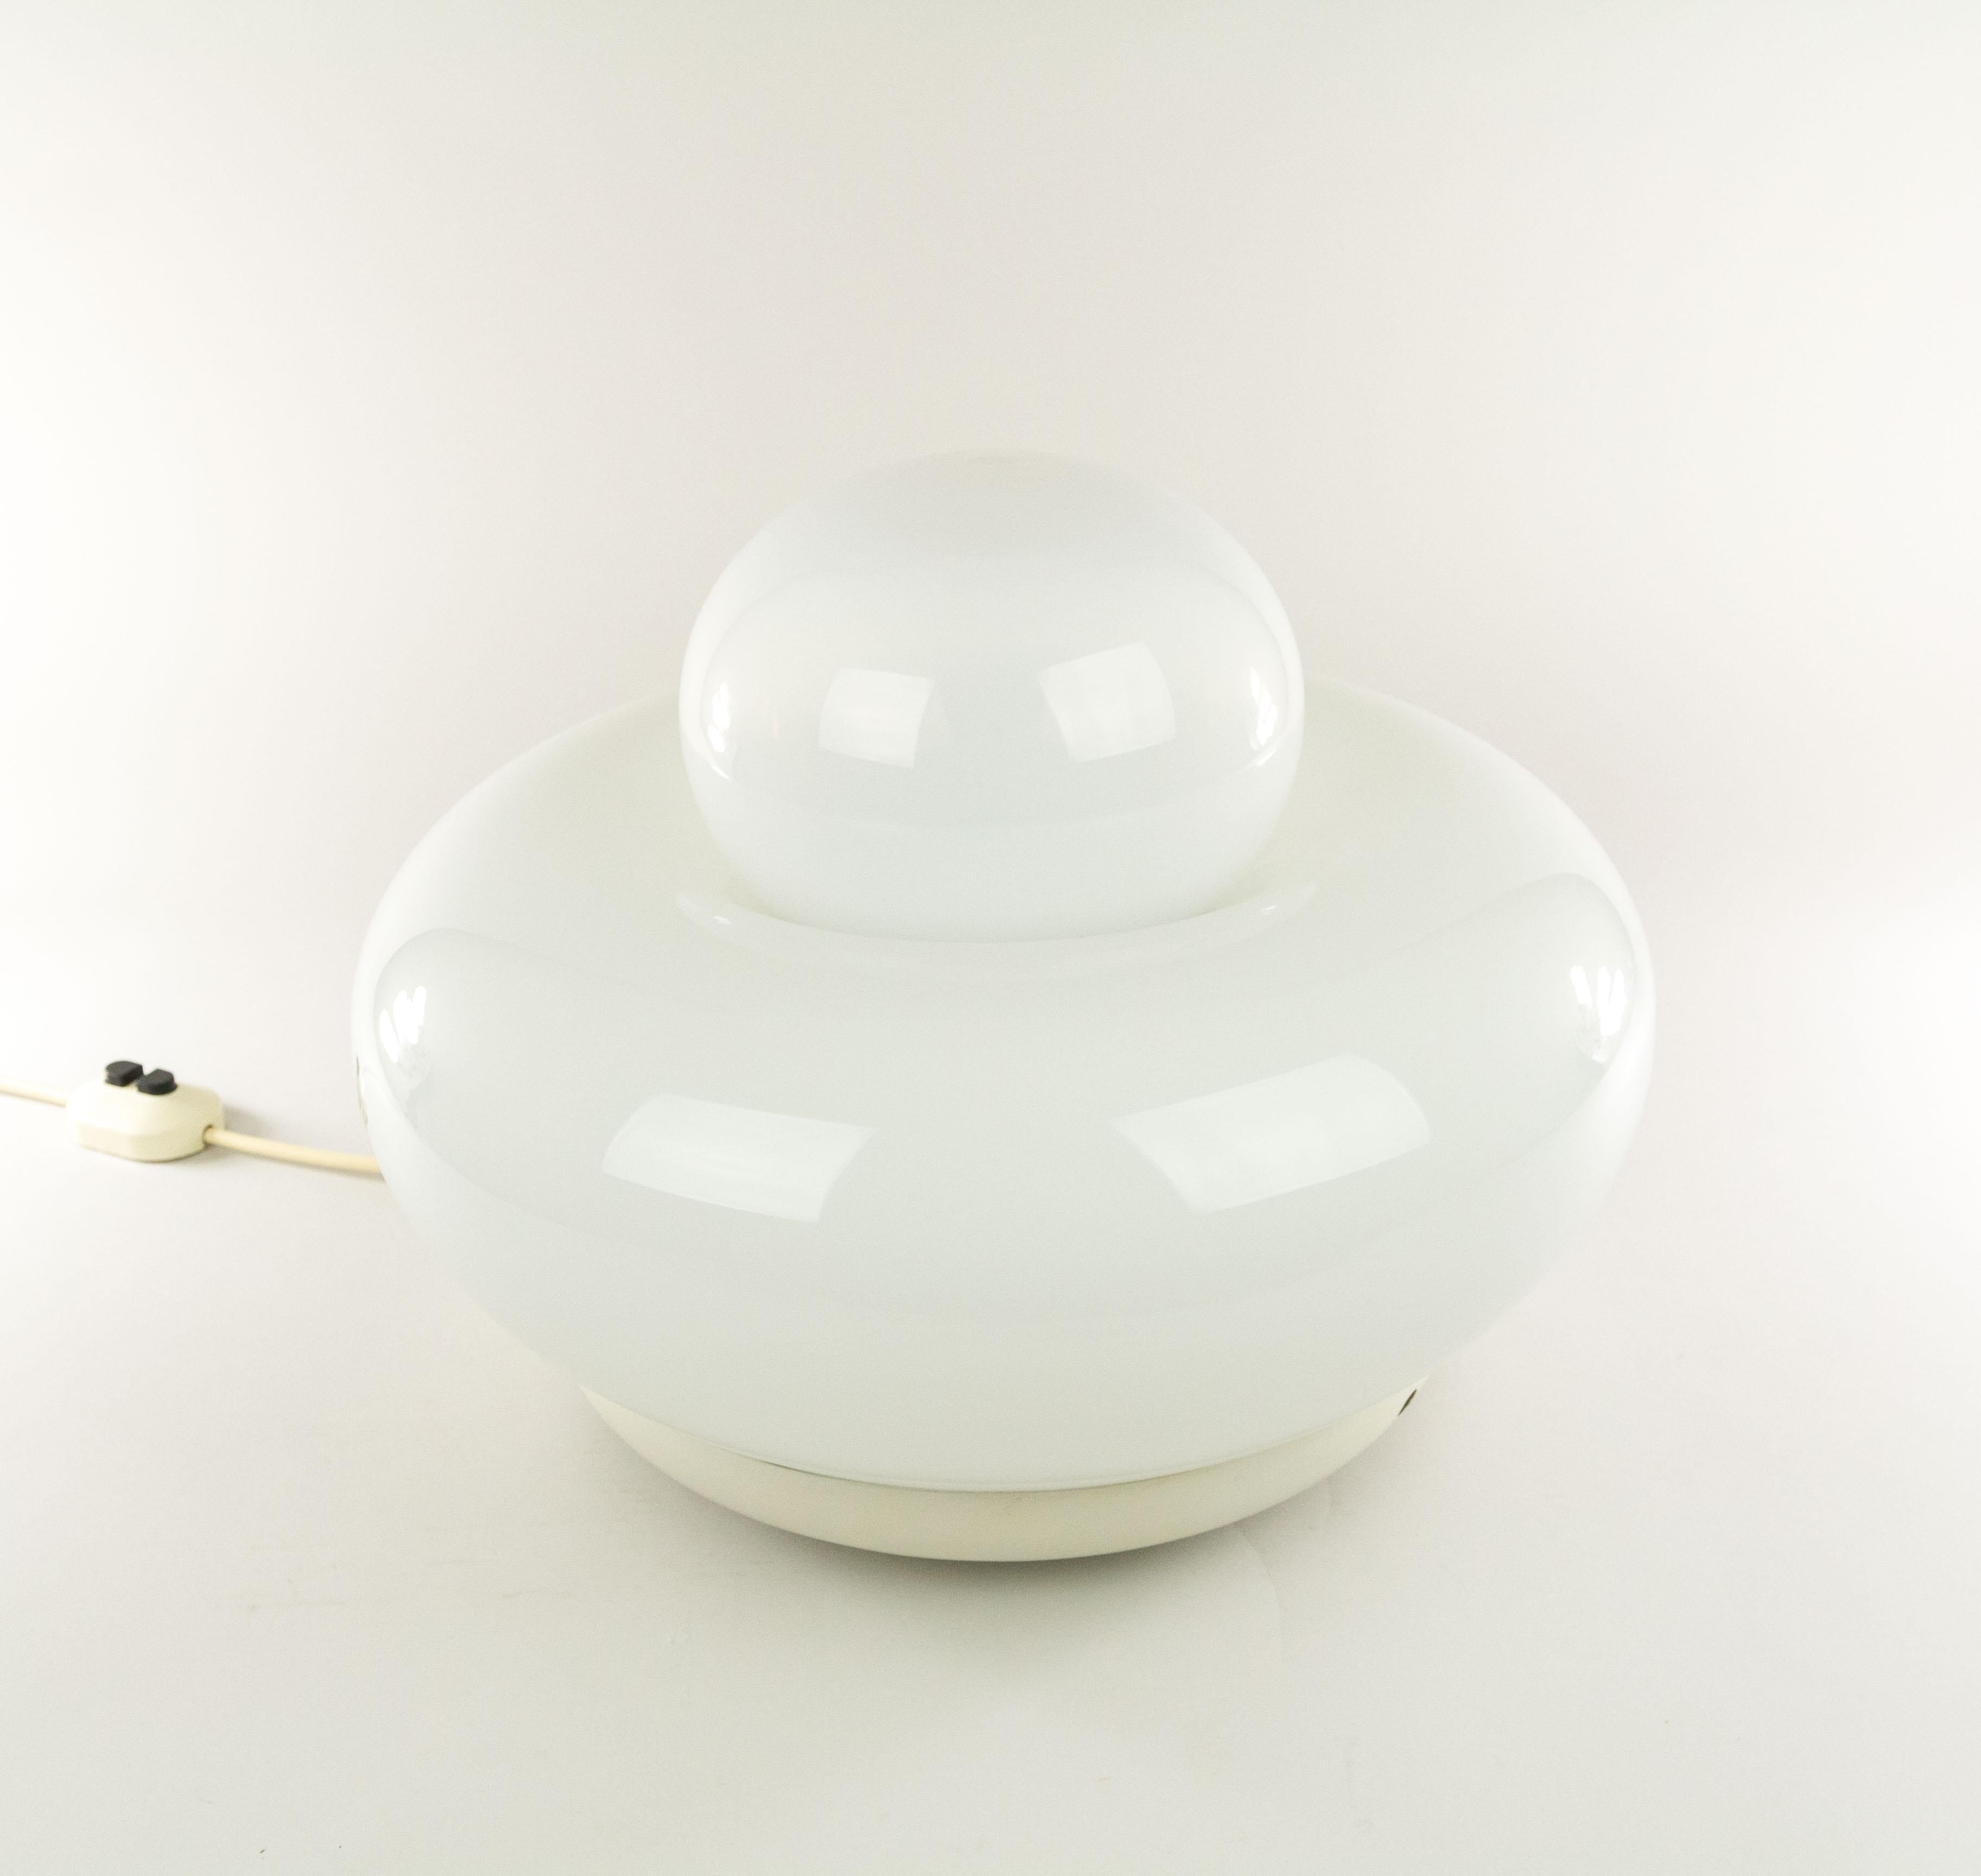 Extraordinaire lampe de table ou lampadaire Electra conçue par Giuliana Gramigna pour le fabricant italien de luminaires et de meubles Artemide en 1968. La lampe peut également être utilisée comme plafonnier.

Elle est dotée d'une base en métal